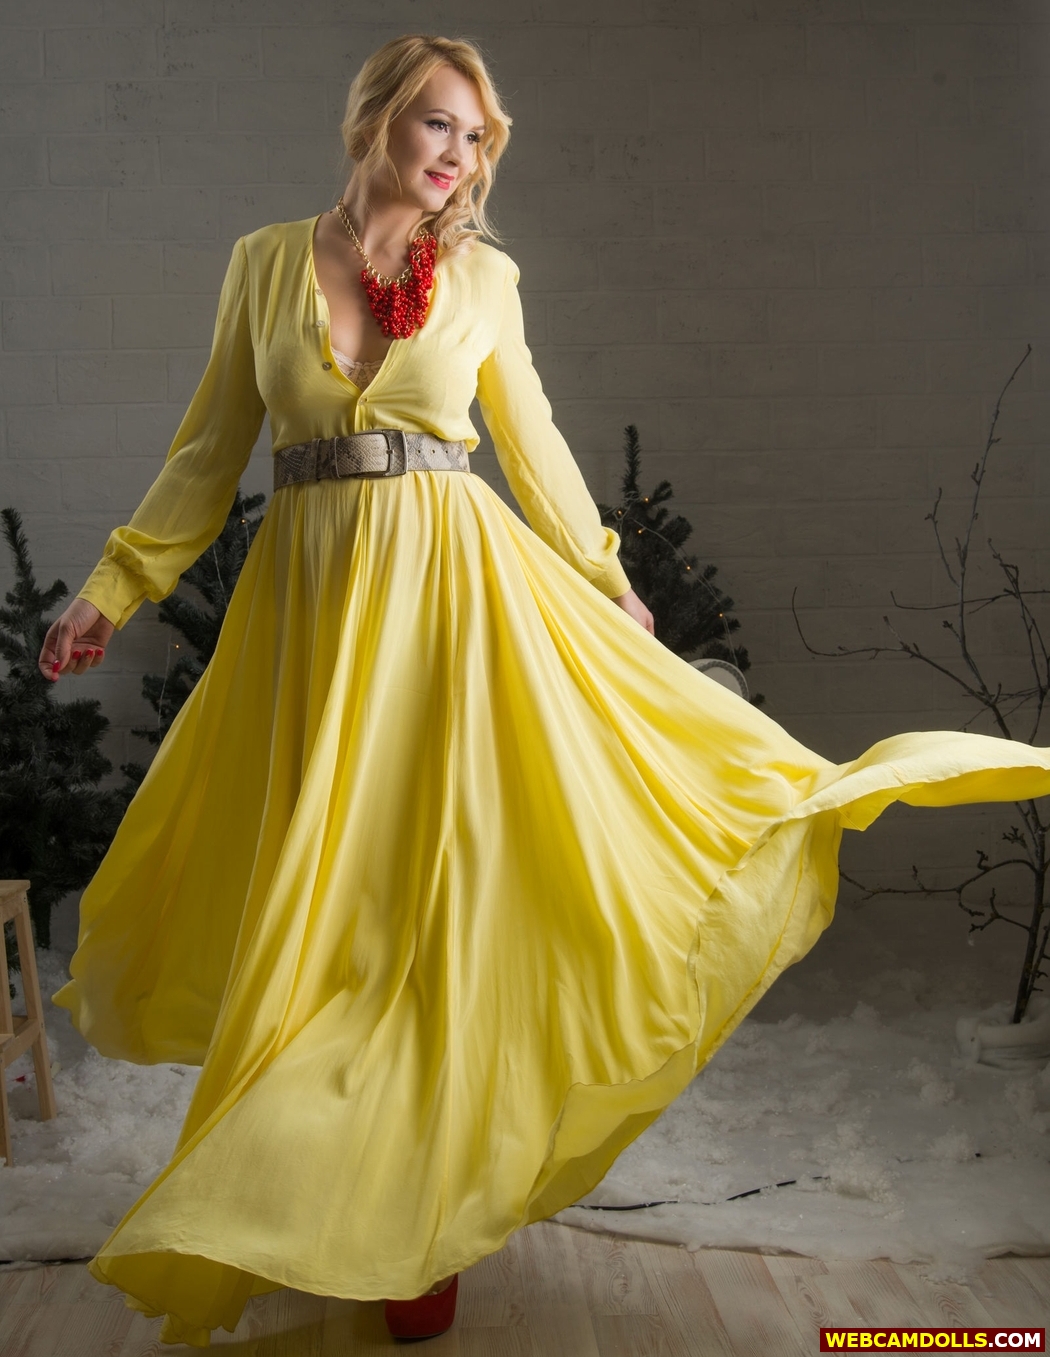 Blonde MILF wearing Lace Bra under Yellow Long Dress on Webcamdolls